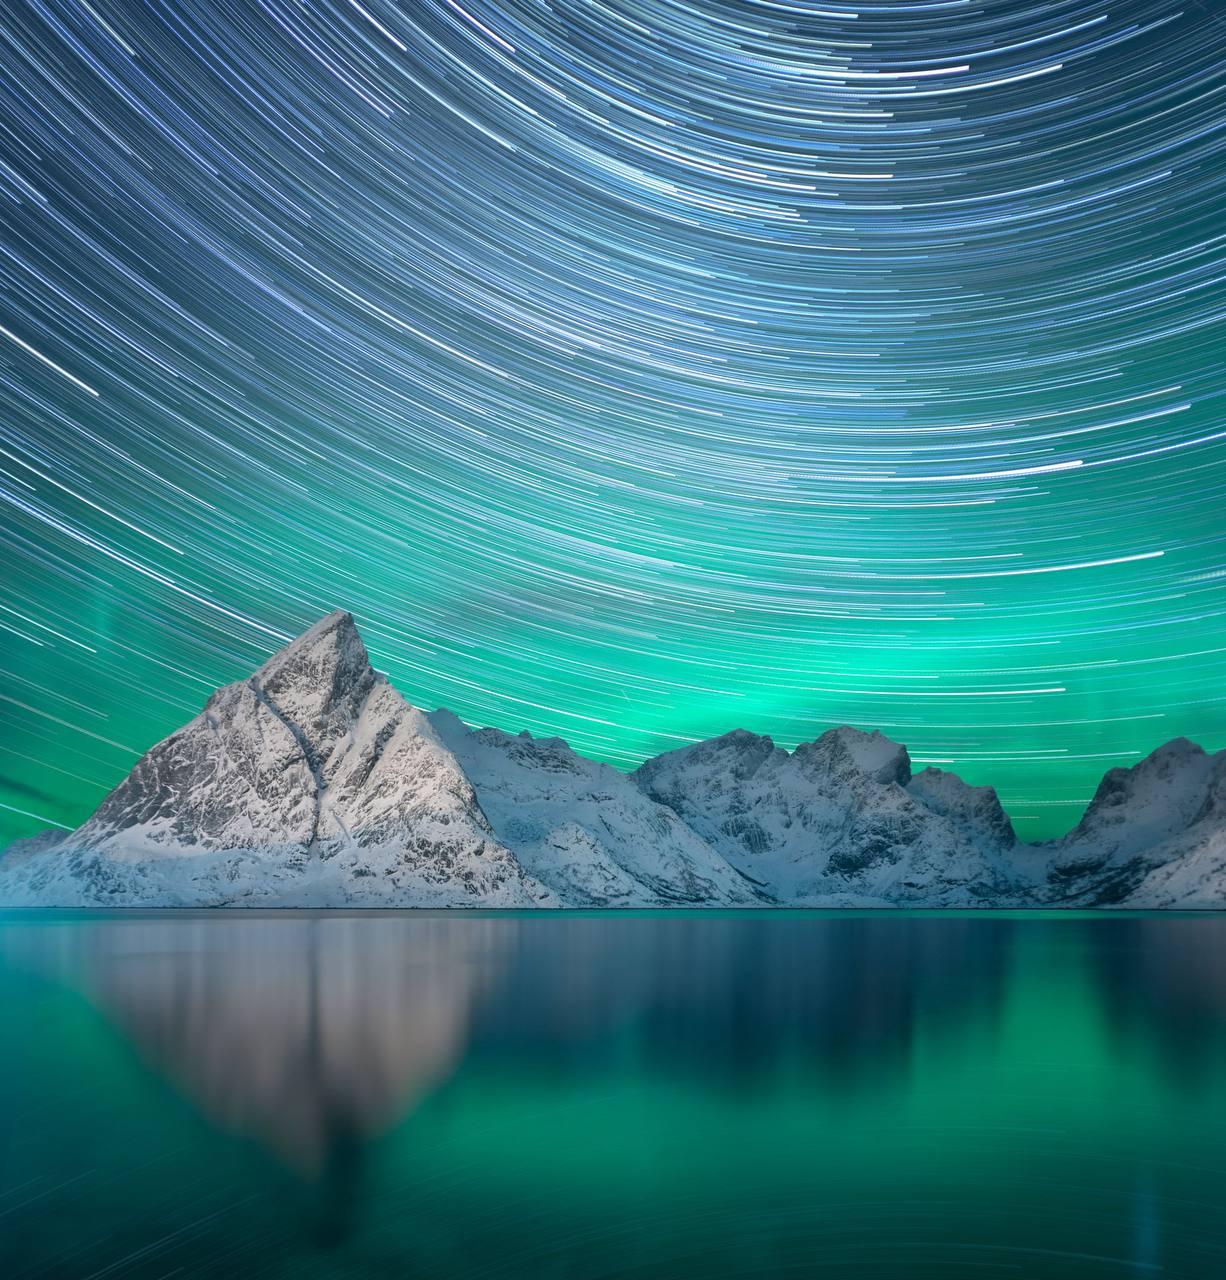 Lights norvégiennes : Photo carrée colorée avec traînées d'étoiles